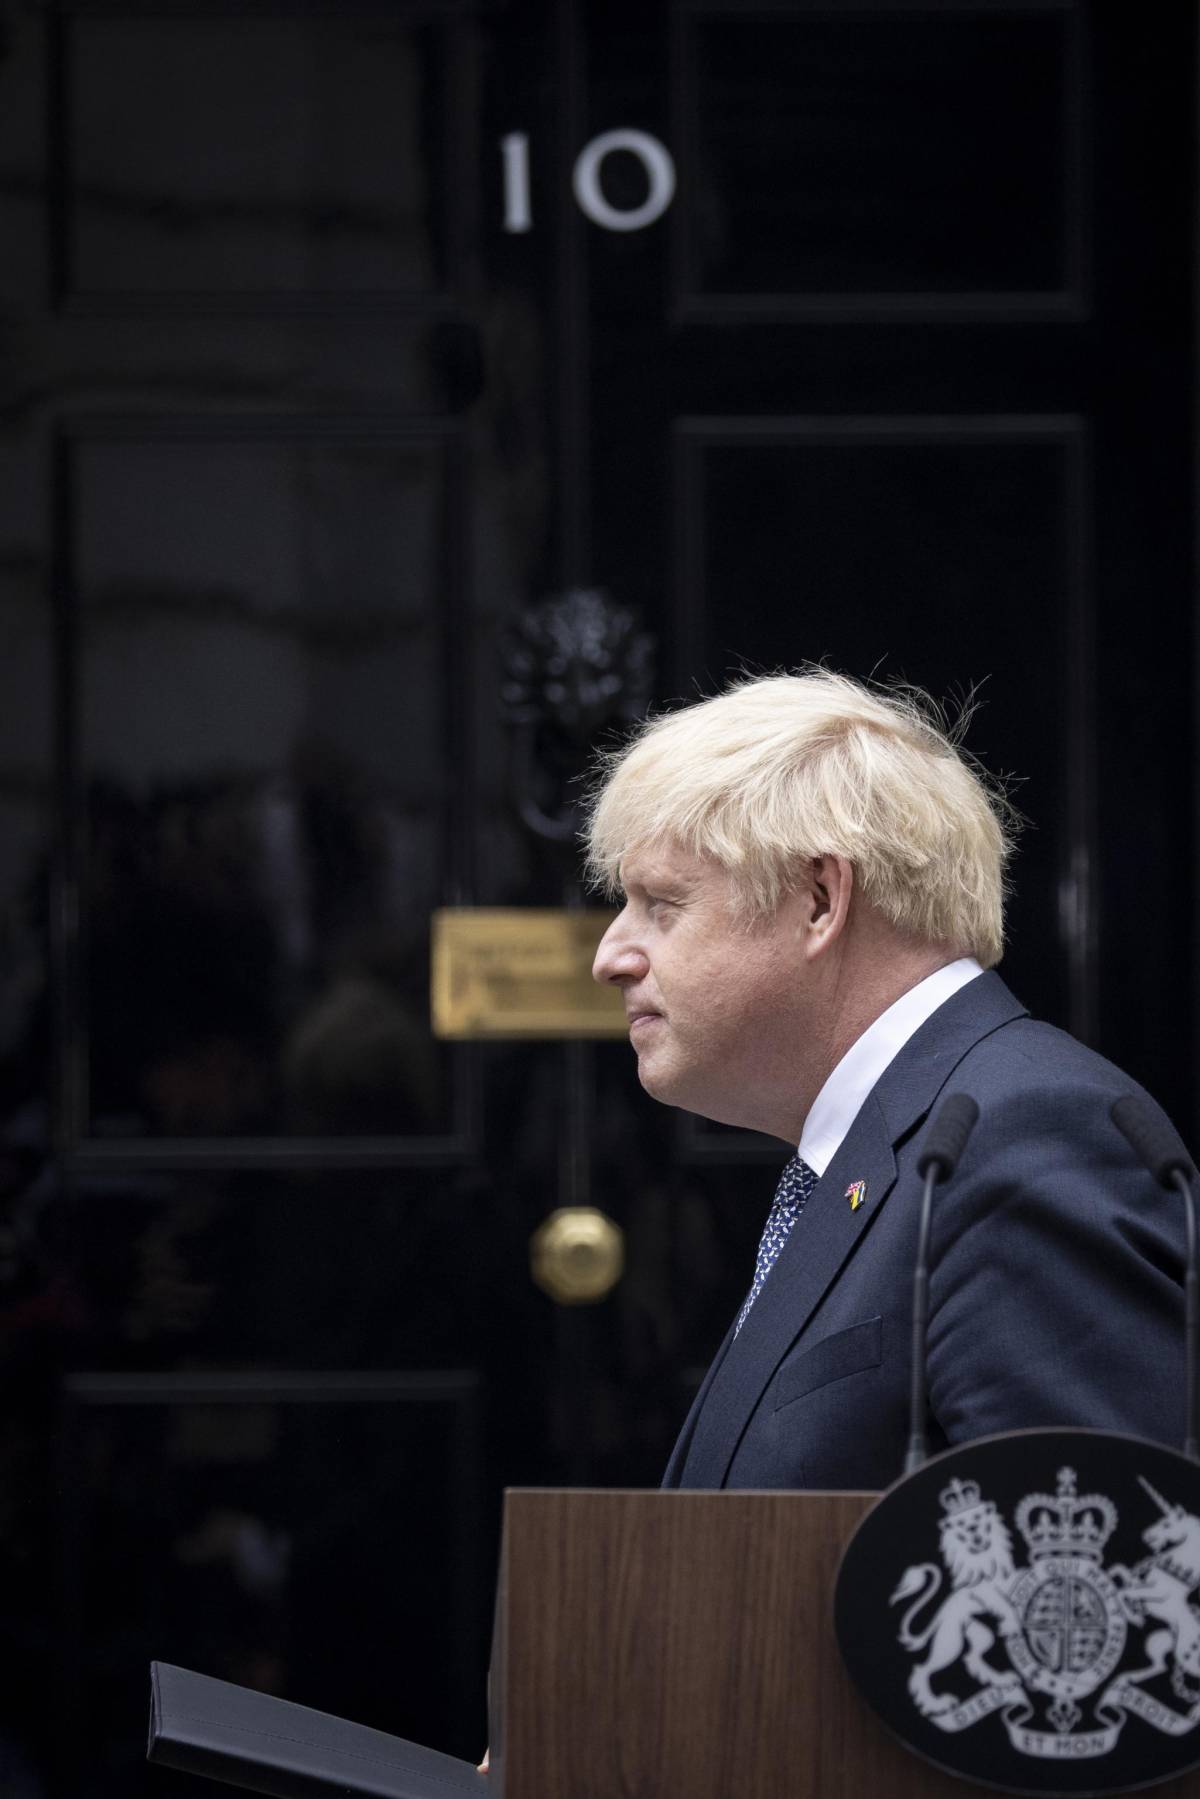 "Apparati britannici contro Johnson". Le ultime rivelazioni a Londra